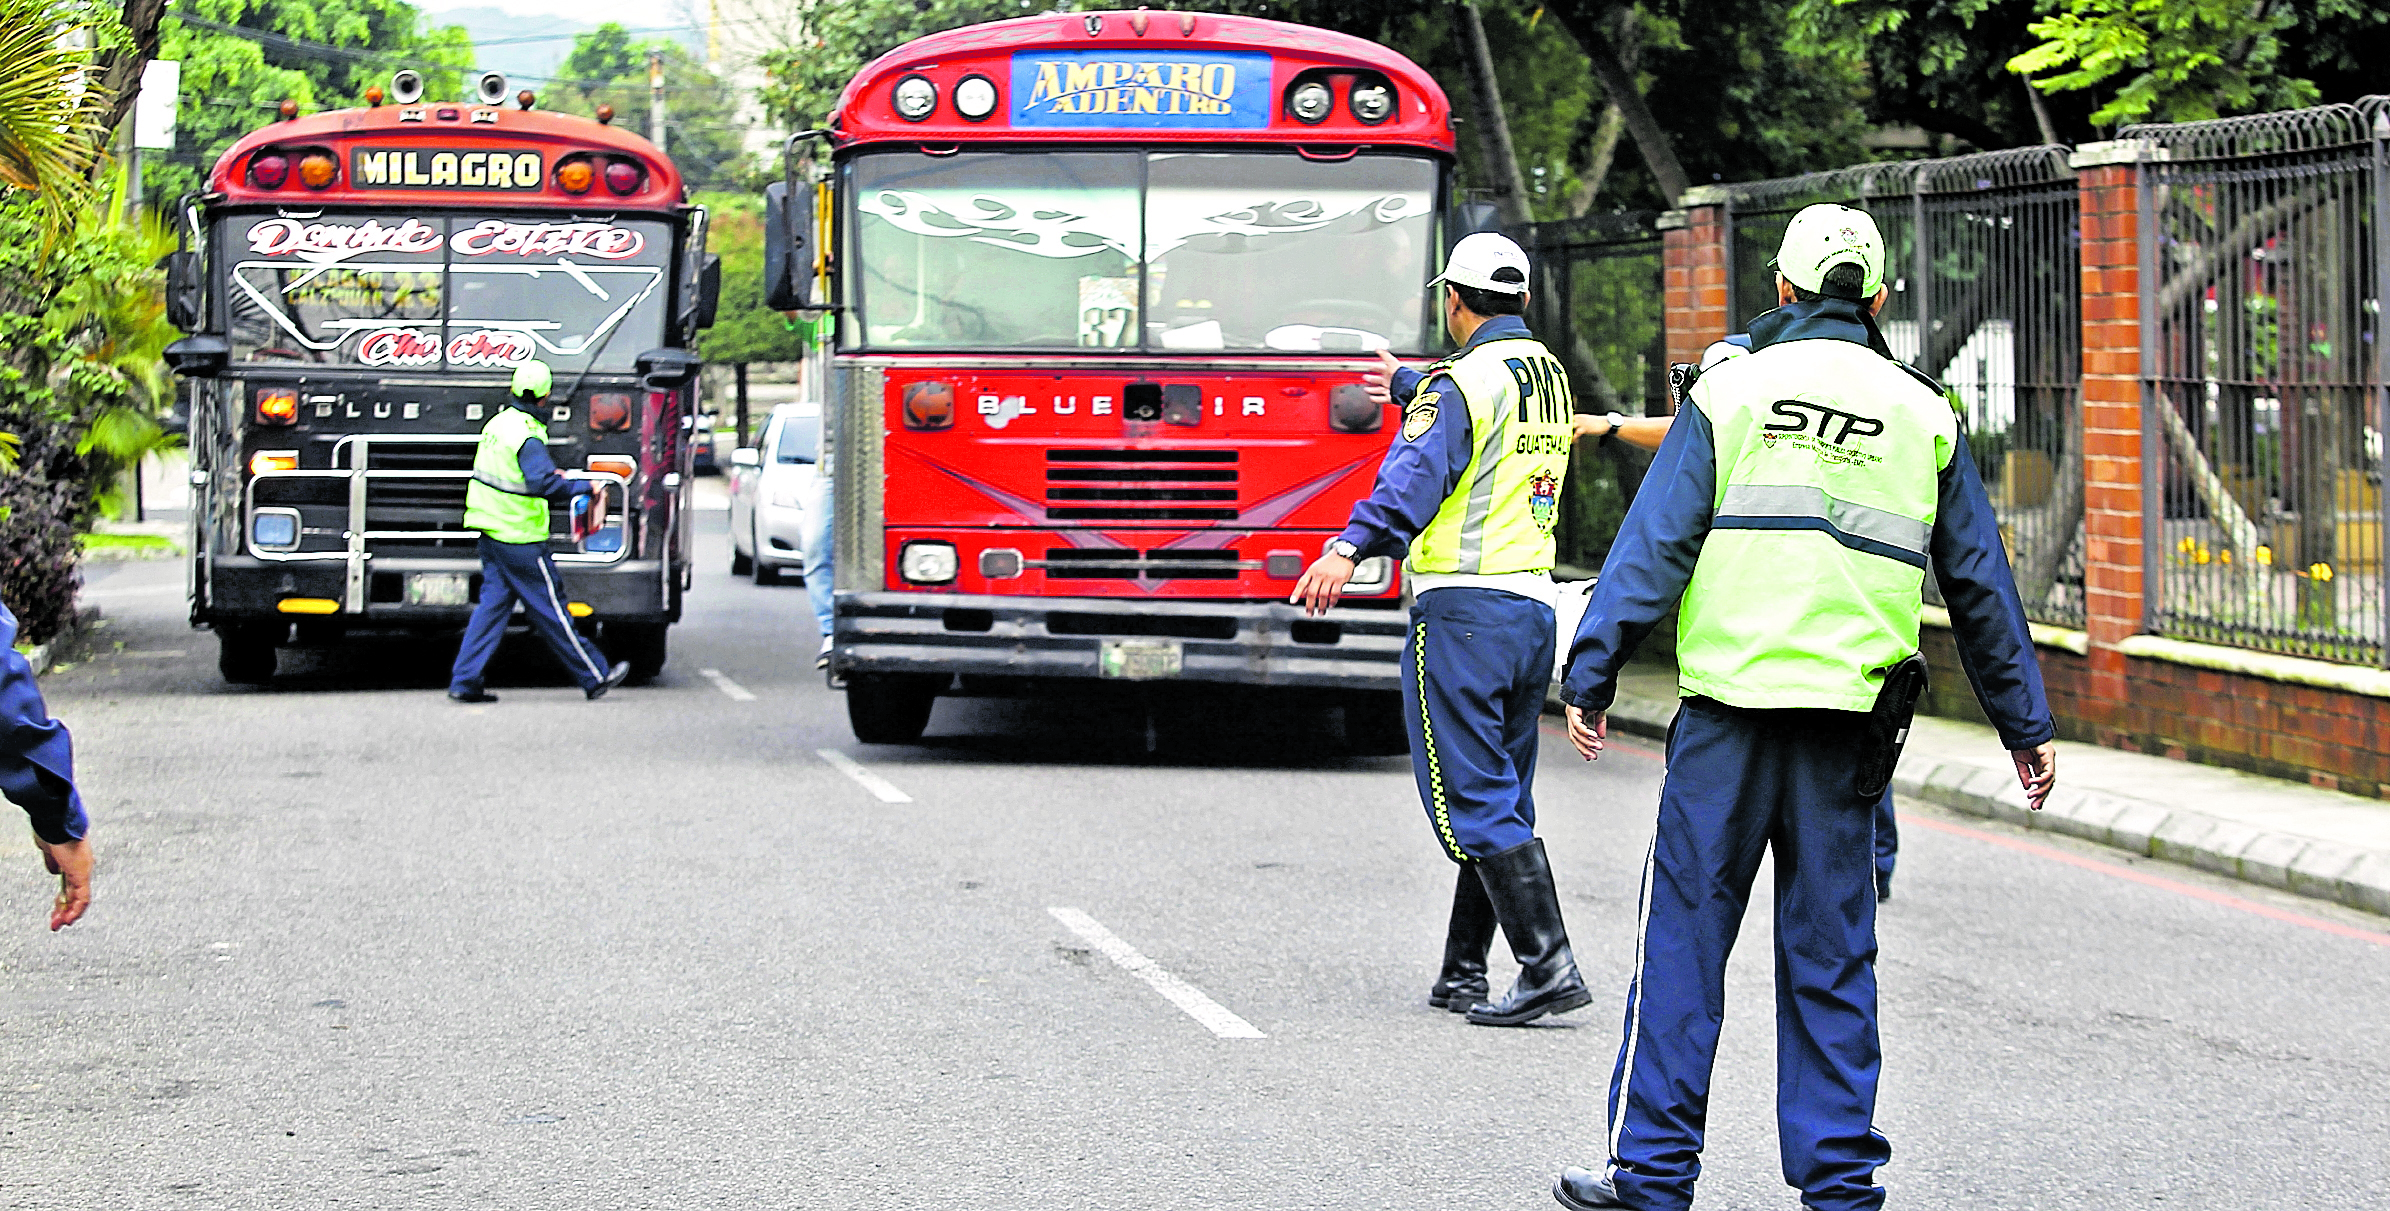 El agente de tránsito fue sorprendido cuando extorsionaba al piloto de un bus urbano, aunque no se mencionó la ubicación (Foto Prensa Libre: Hemeroteca PL)